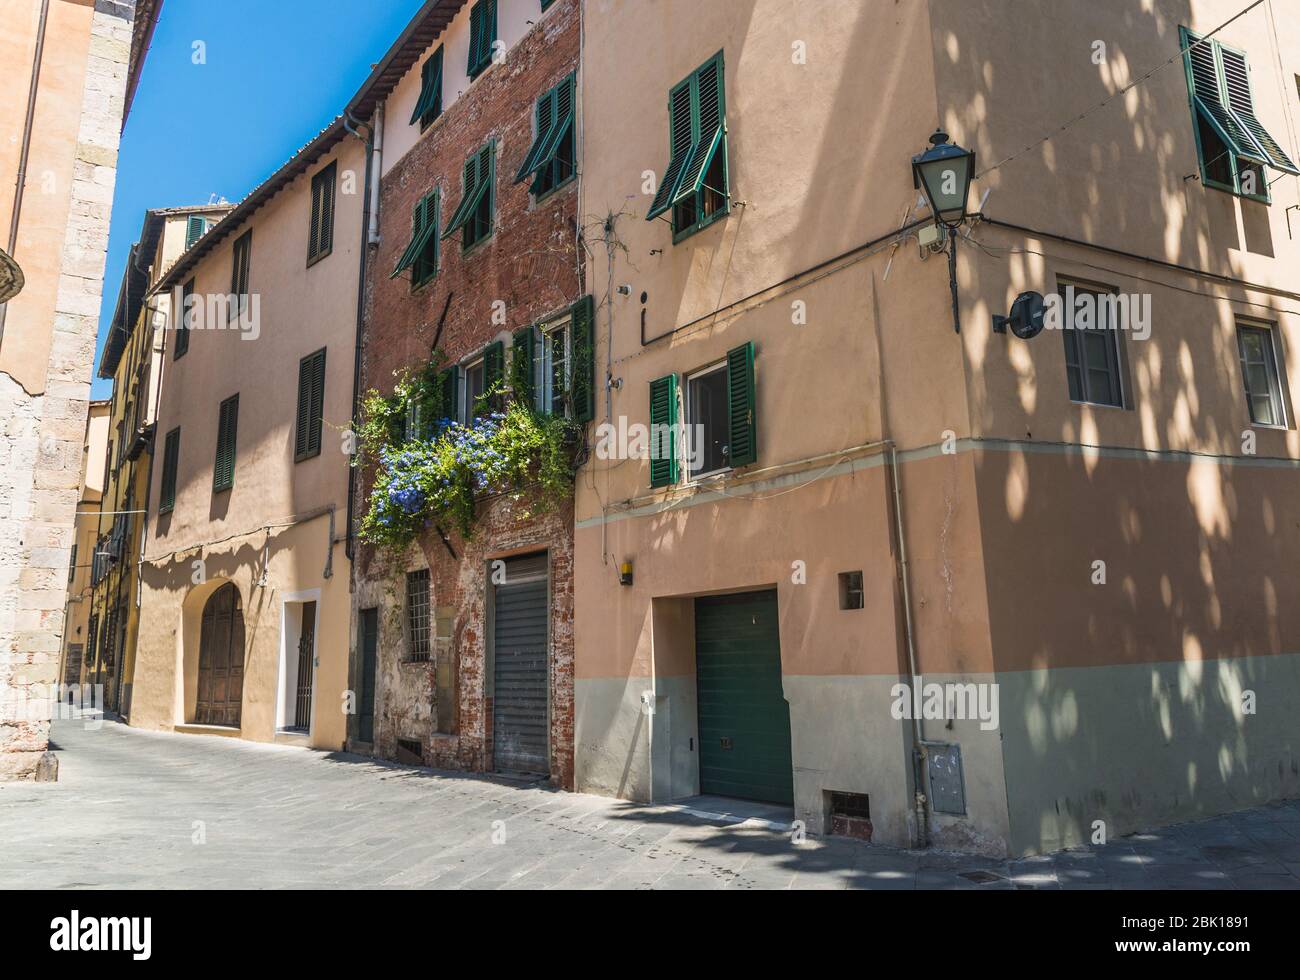 Rues étroites de Lucques ancienne ville avec architecture traditionnelle, Italie. Banque D'Images